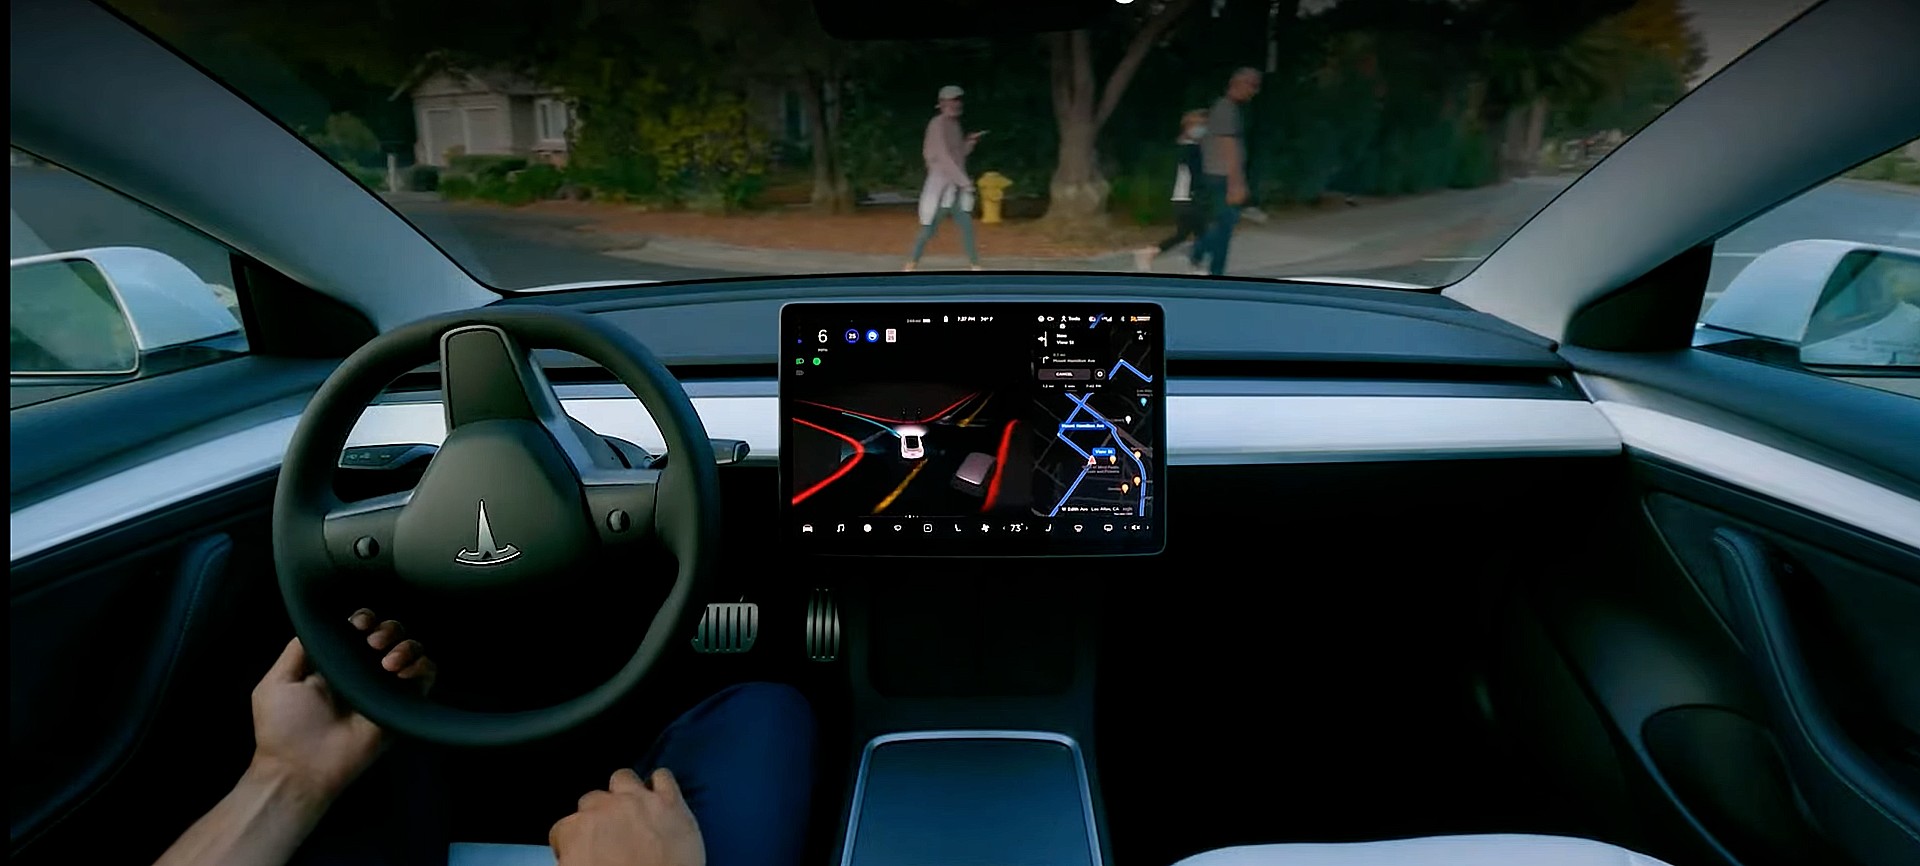 Отчет о безопасности транспортных средств Tesla Q4 2021 фиксирует 1 аварию на каждые 4,31 миллиона миль с включенным автопилотом.